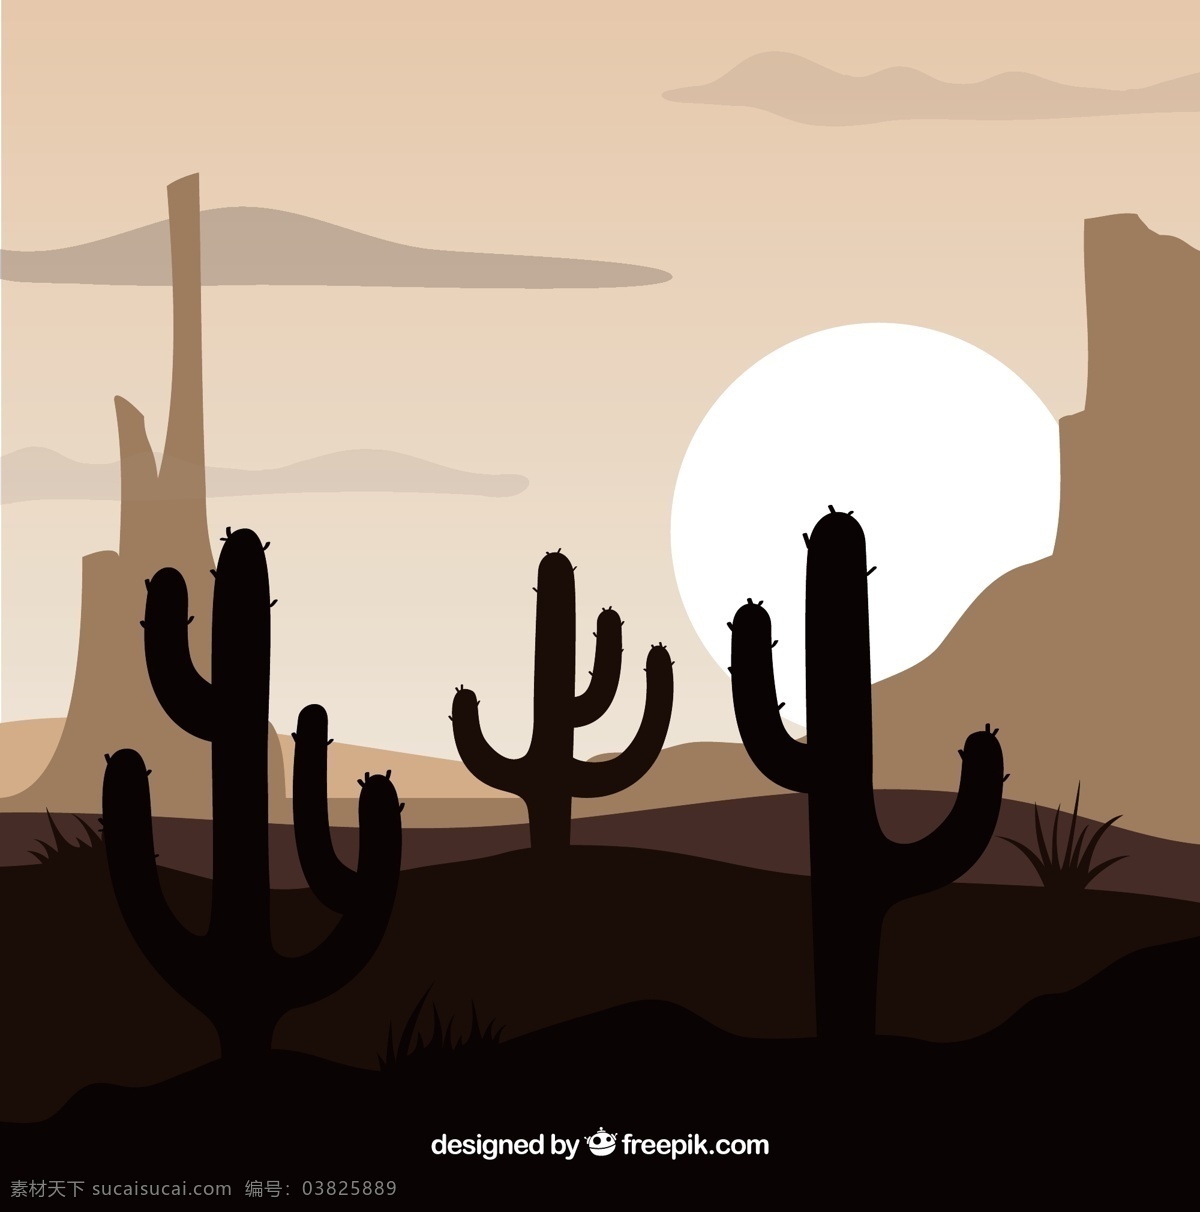 西方 背景 仙人掌 自然 山 太阳 风景 剪影 岩石 墨西哥 自然背景 山脉 日落 沙漠 户外 西部 场景 野生 狂野西部